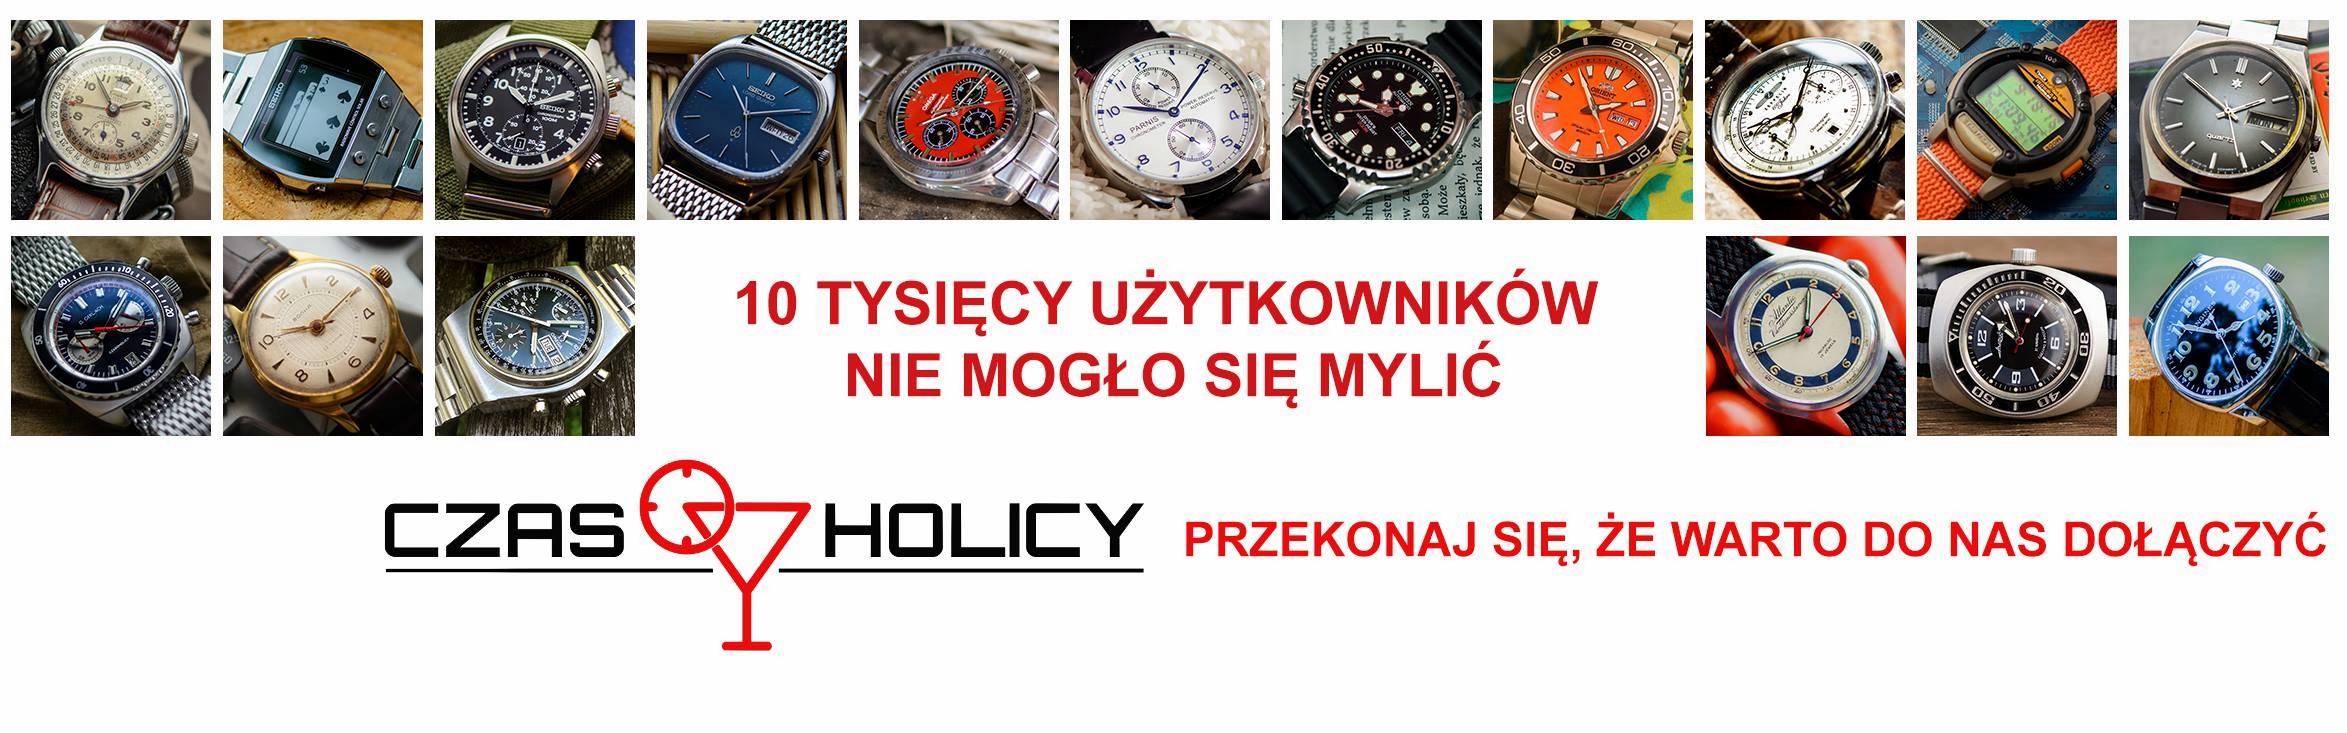 Konkurs: Czasoholicy i Atlantic Polska, przy wsparciu Zegarki i Pasja – do wygrania zegarki!